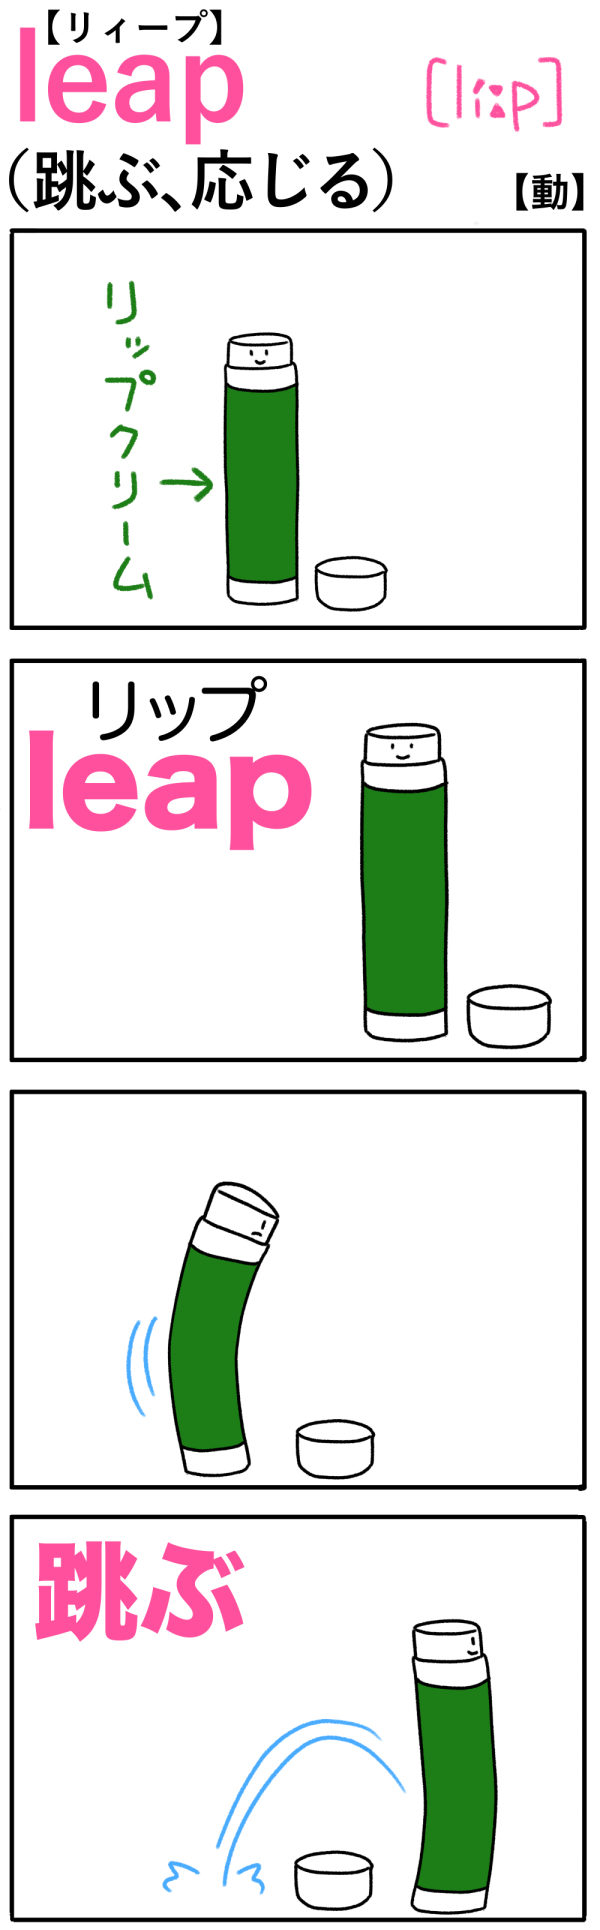 leap（跳ぶ）の語呂合わせ英単語